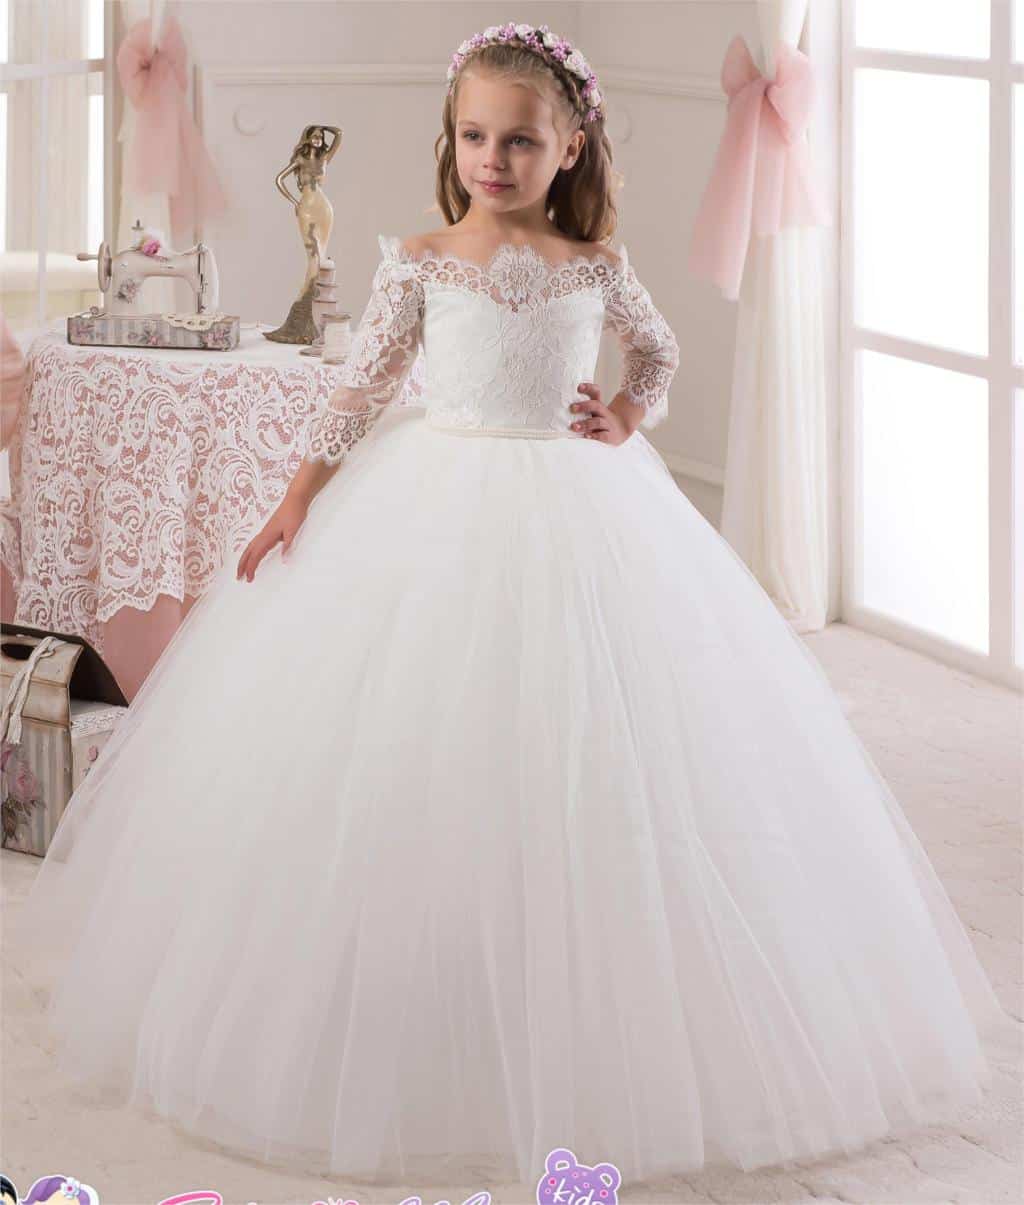 صور أجدد تصميمات لفساتين العرس للاطفال رائعة